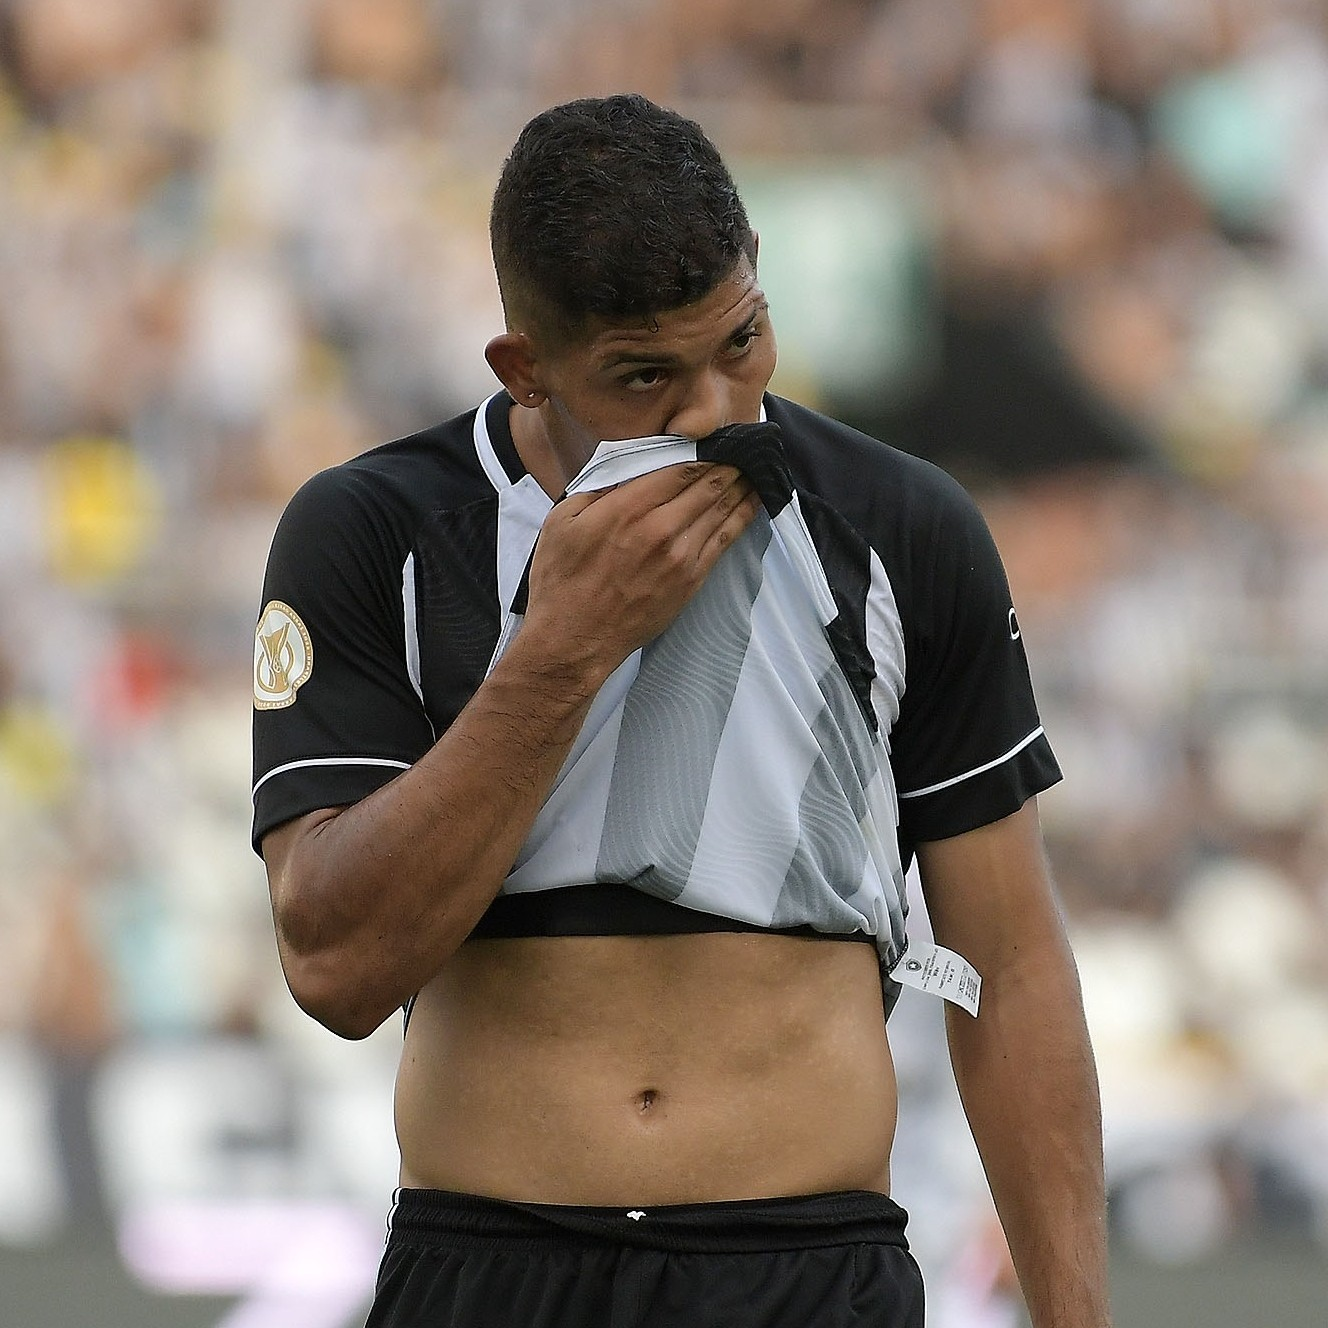 GE Botafogo #179 - O que precisa mudar de cara após a atuação ruim na estreia?